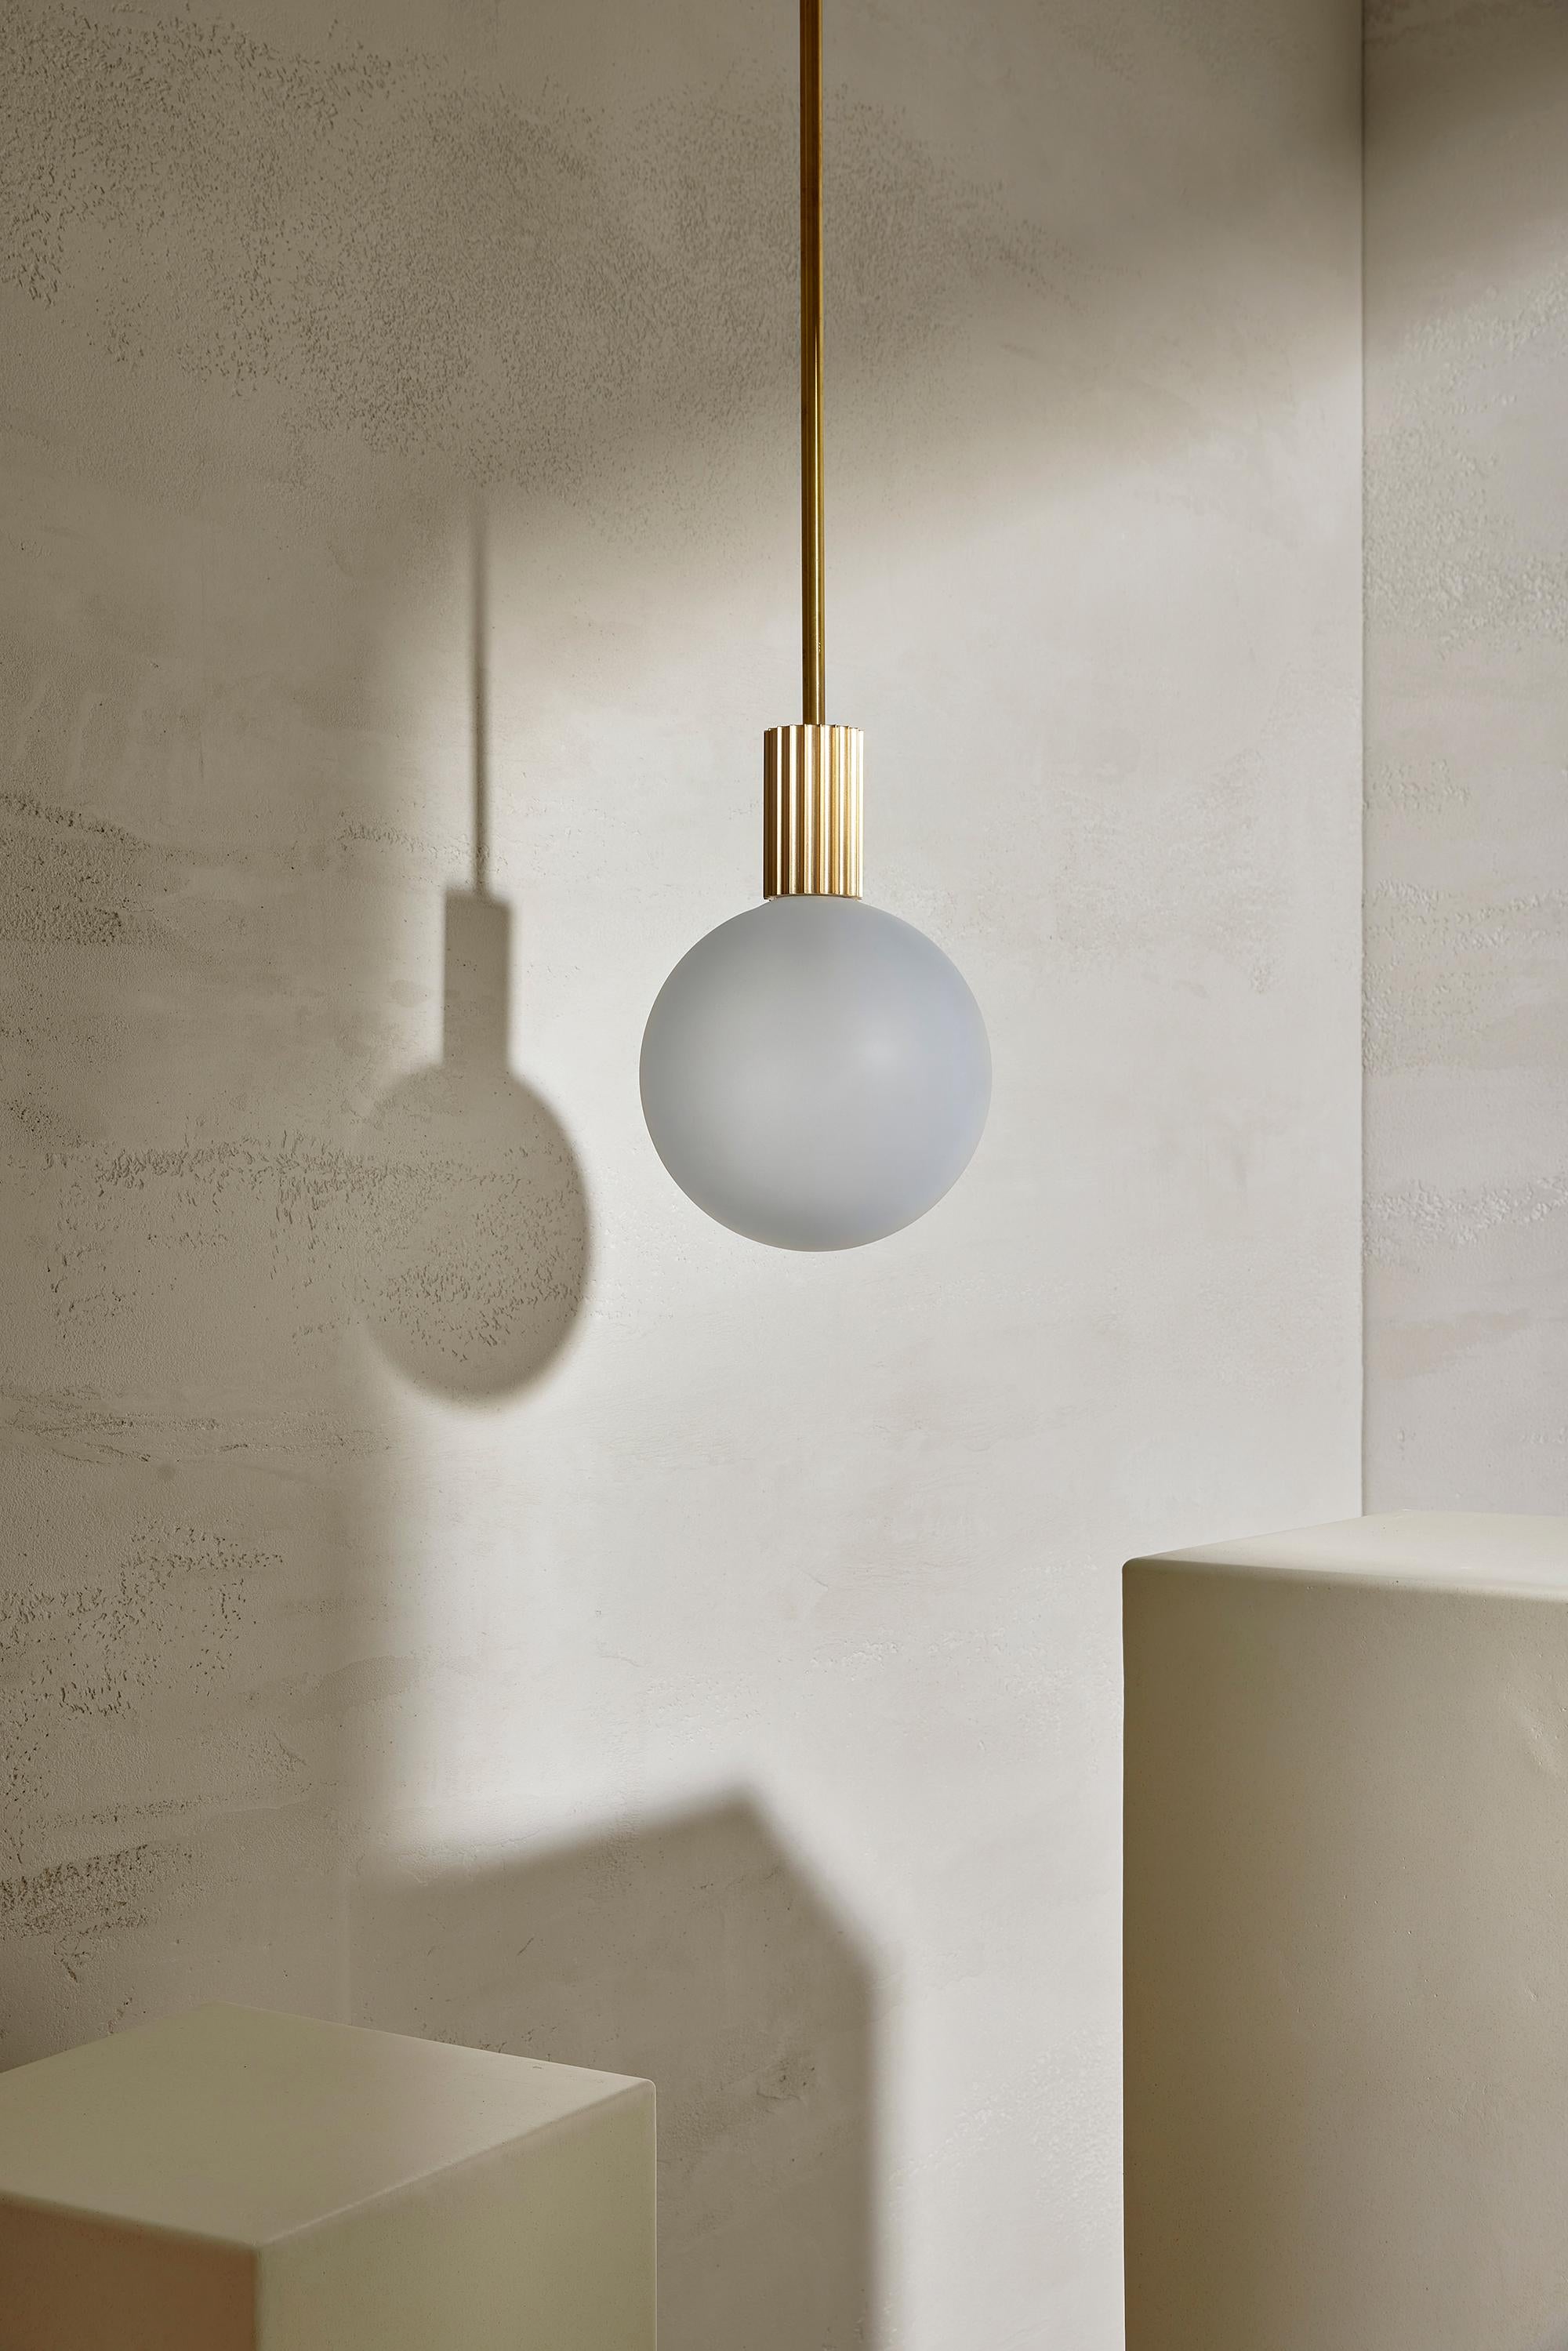 La lampe suspendue Attalos, 200 est une lampe LED classique et sculpturale. Chaque pièce de la gamme Attalos s'inspire des colonnes cannelées de la Stoa d'Attalos, à Athènes, et de l'ordre dorique. La lampe suspendue Attalos est dotée d'un globe